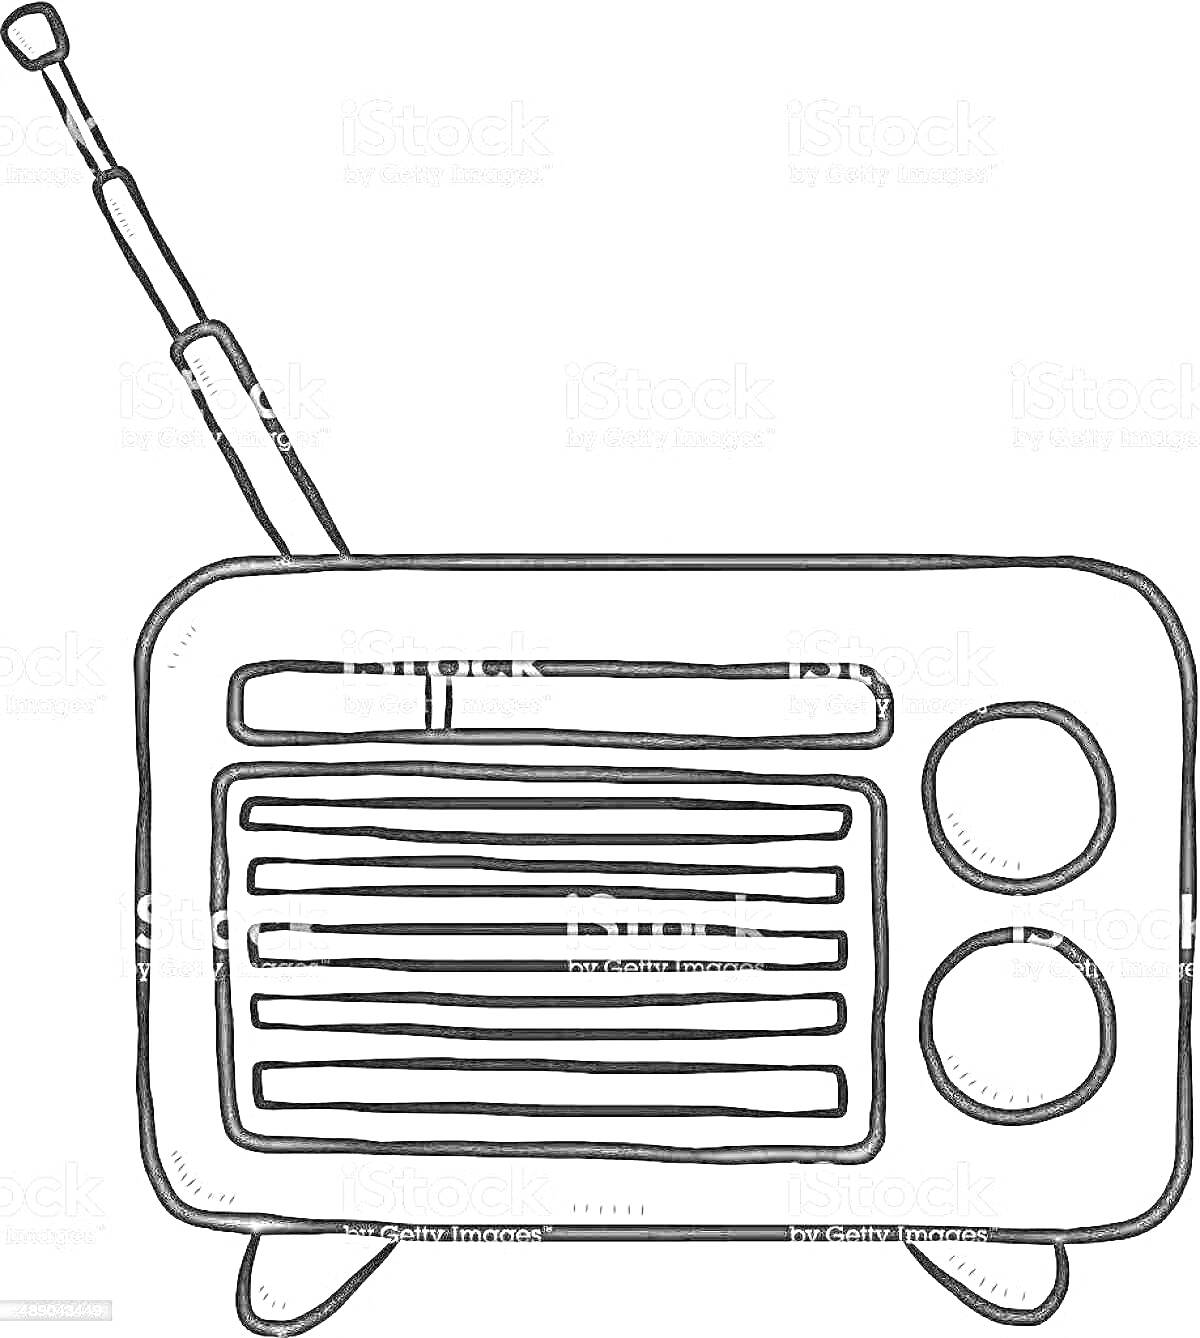 Раскраска Радиоприемник с антенной, двумя ручками настройки и динамиком